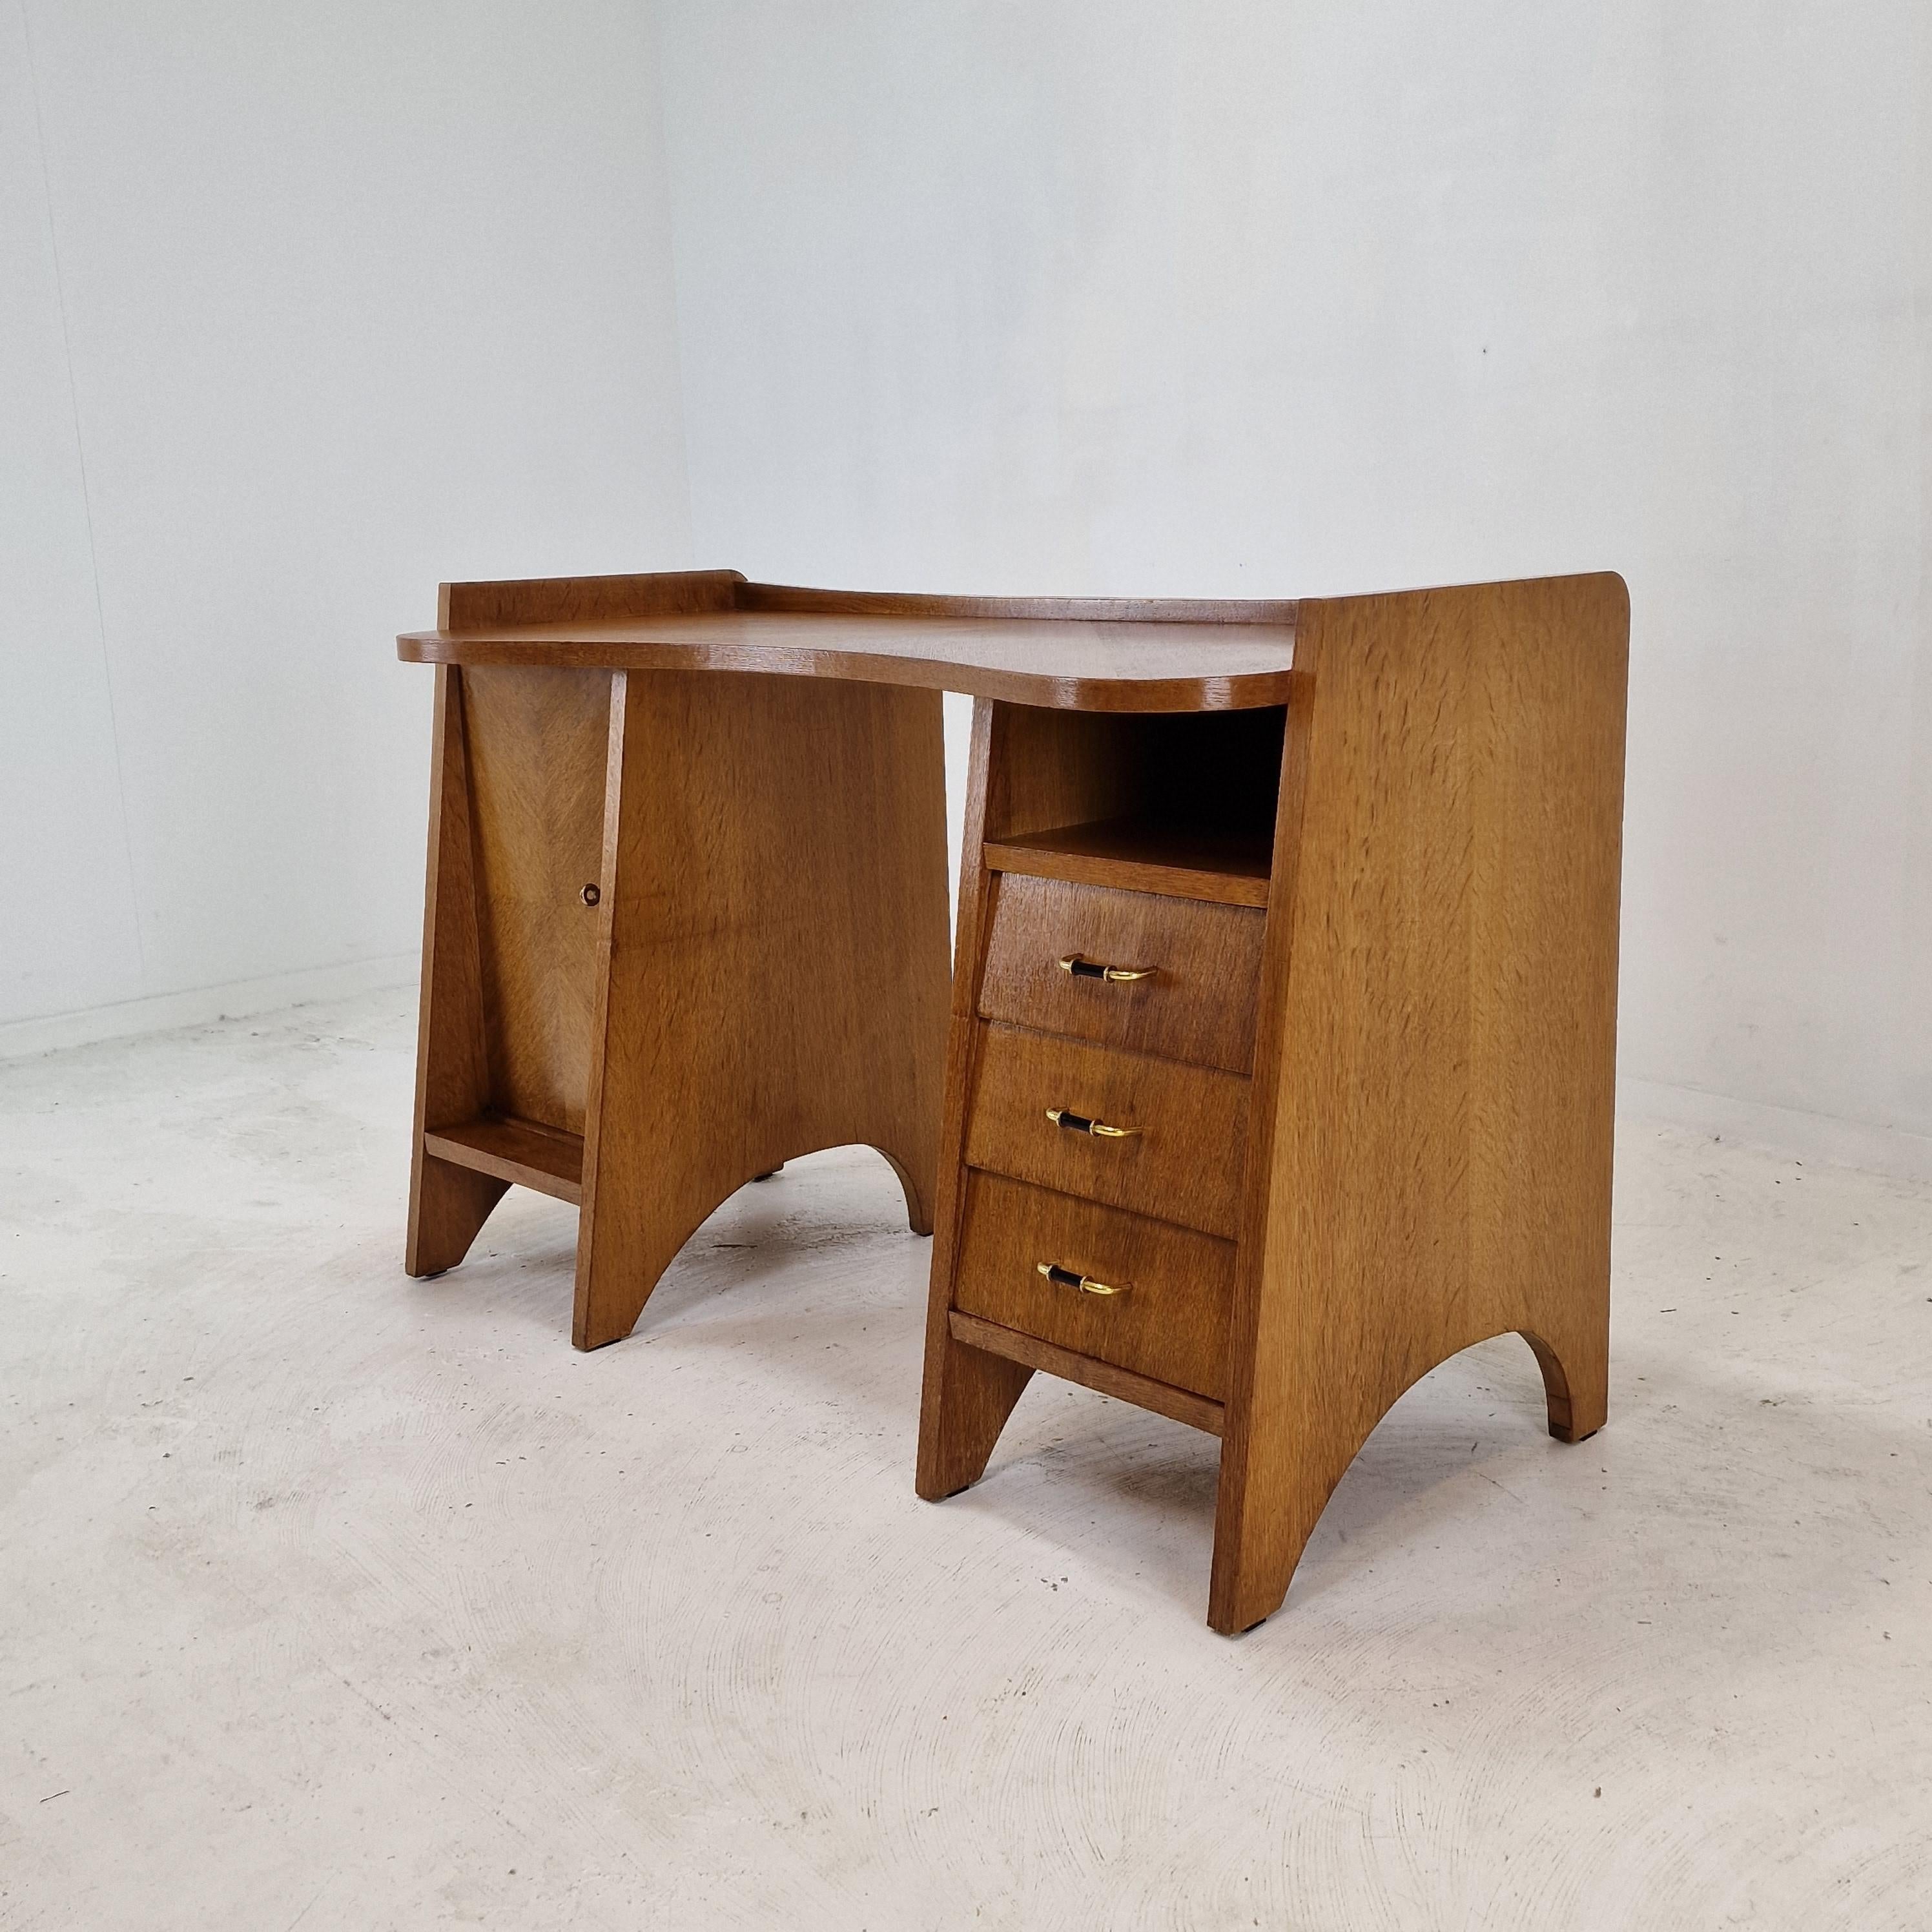 Schöner Schreibtisch, der in den 1960er Jahren in Italien hergestellt wurde. 
Dieser Schreibtisch aus Eichenholz wurde mit viel Liebe und Leidenschaft von einem Handwerker hergestellt, wie Sie an den Details sehen können.

Der Schreibtisch kann dank